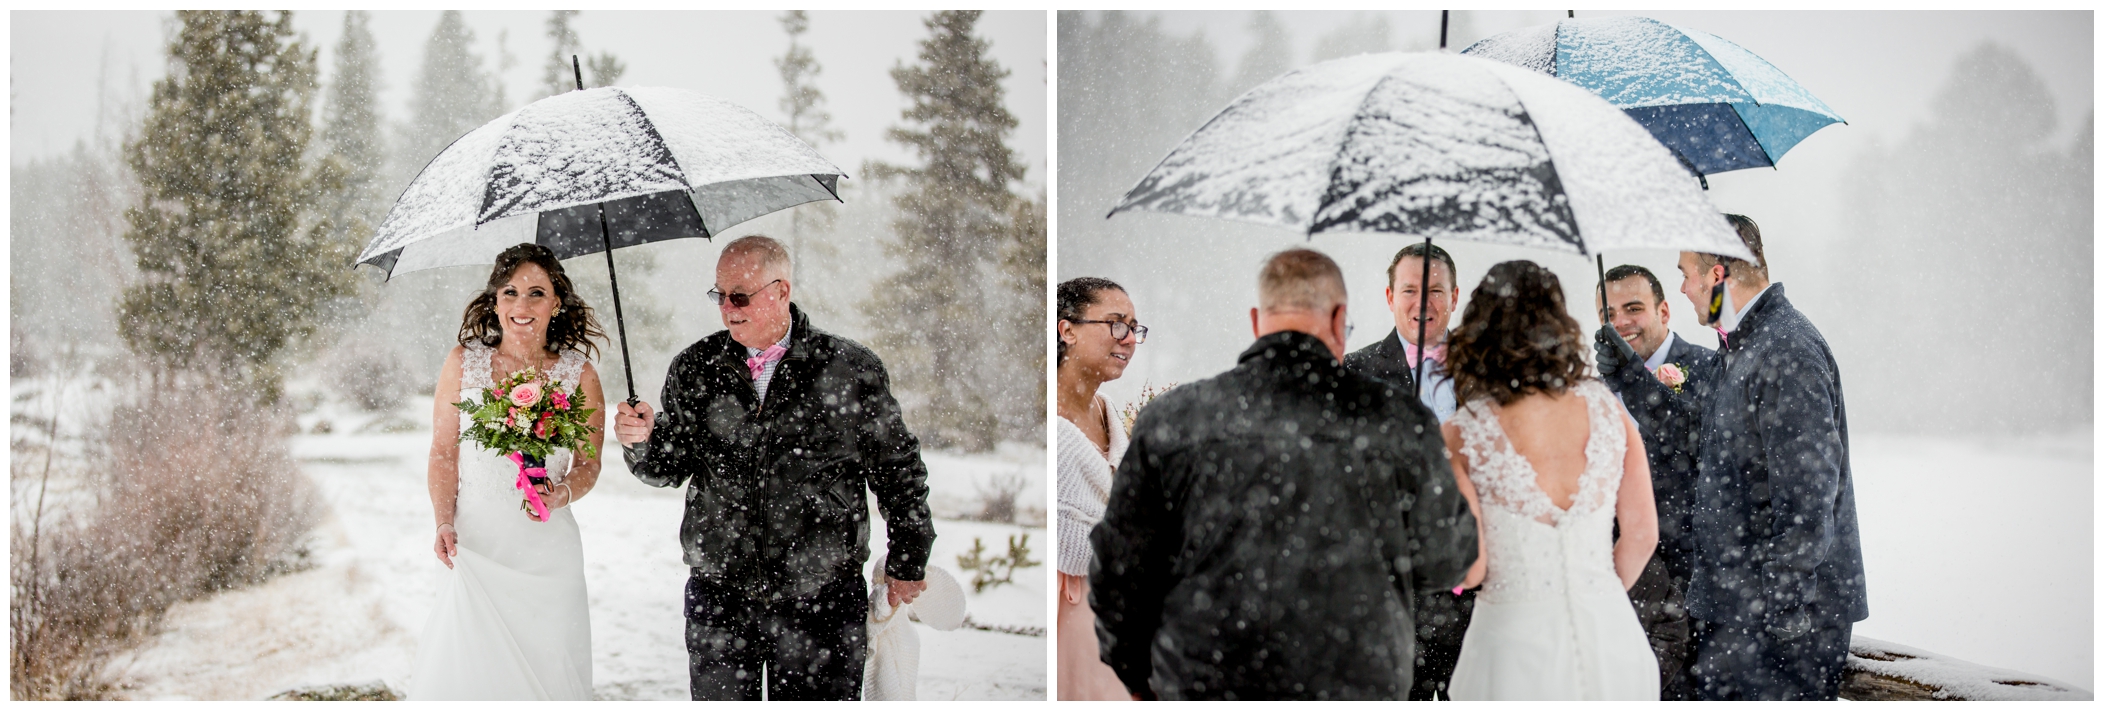 snowy outdoor wedding ceremony in Estes Park 